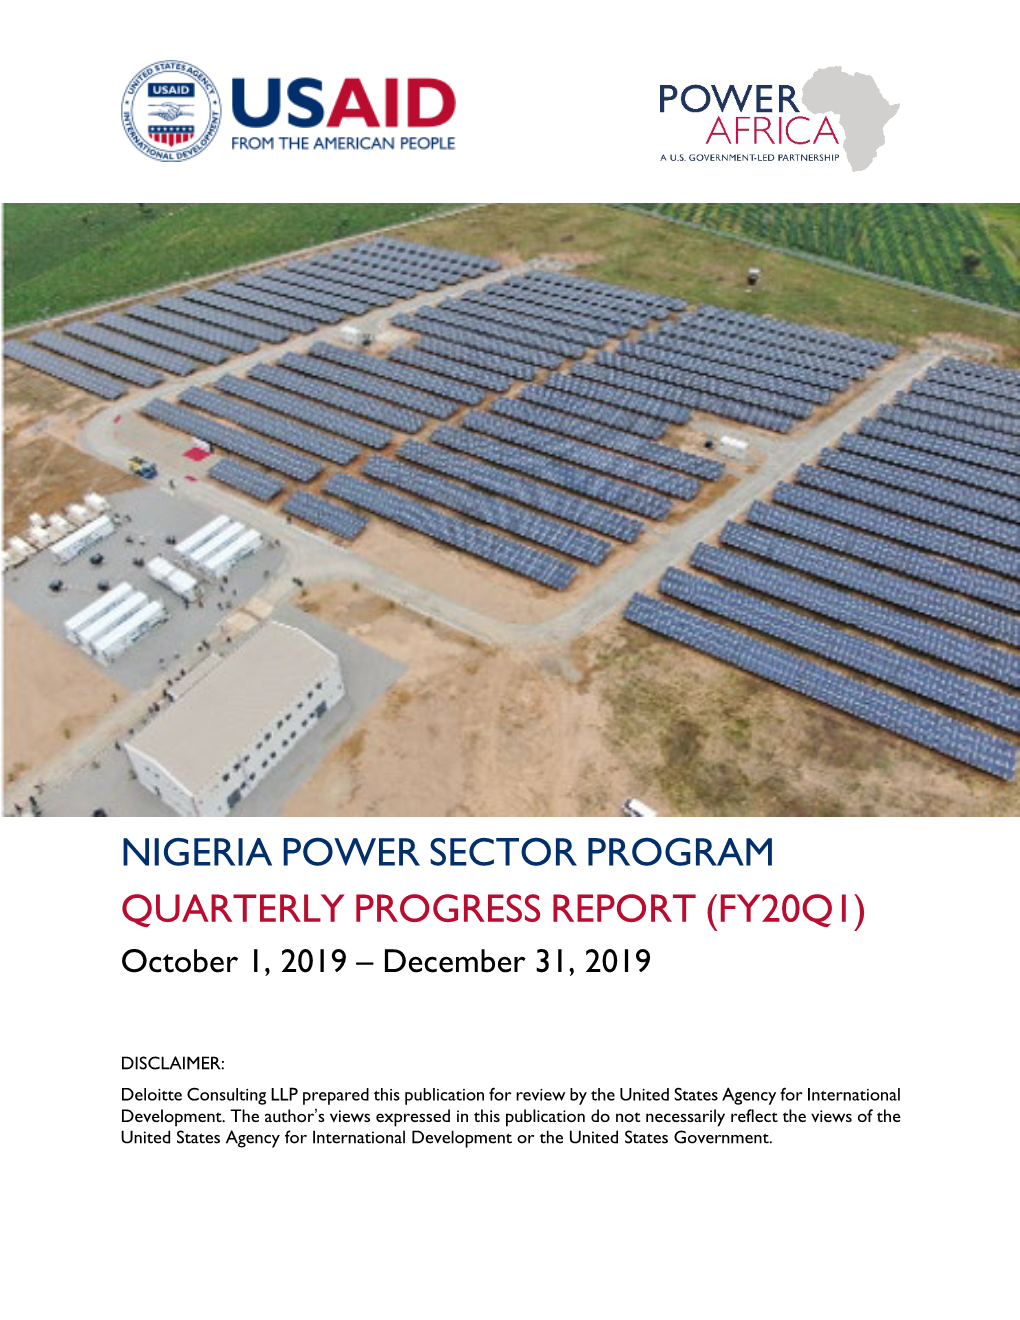 NIGERIA POWER SECTOR PROGRAM QUARTERLY PROGRESS REPORT (FY20Q1) October 1, 2019 – December 31, 2019